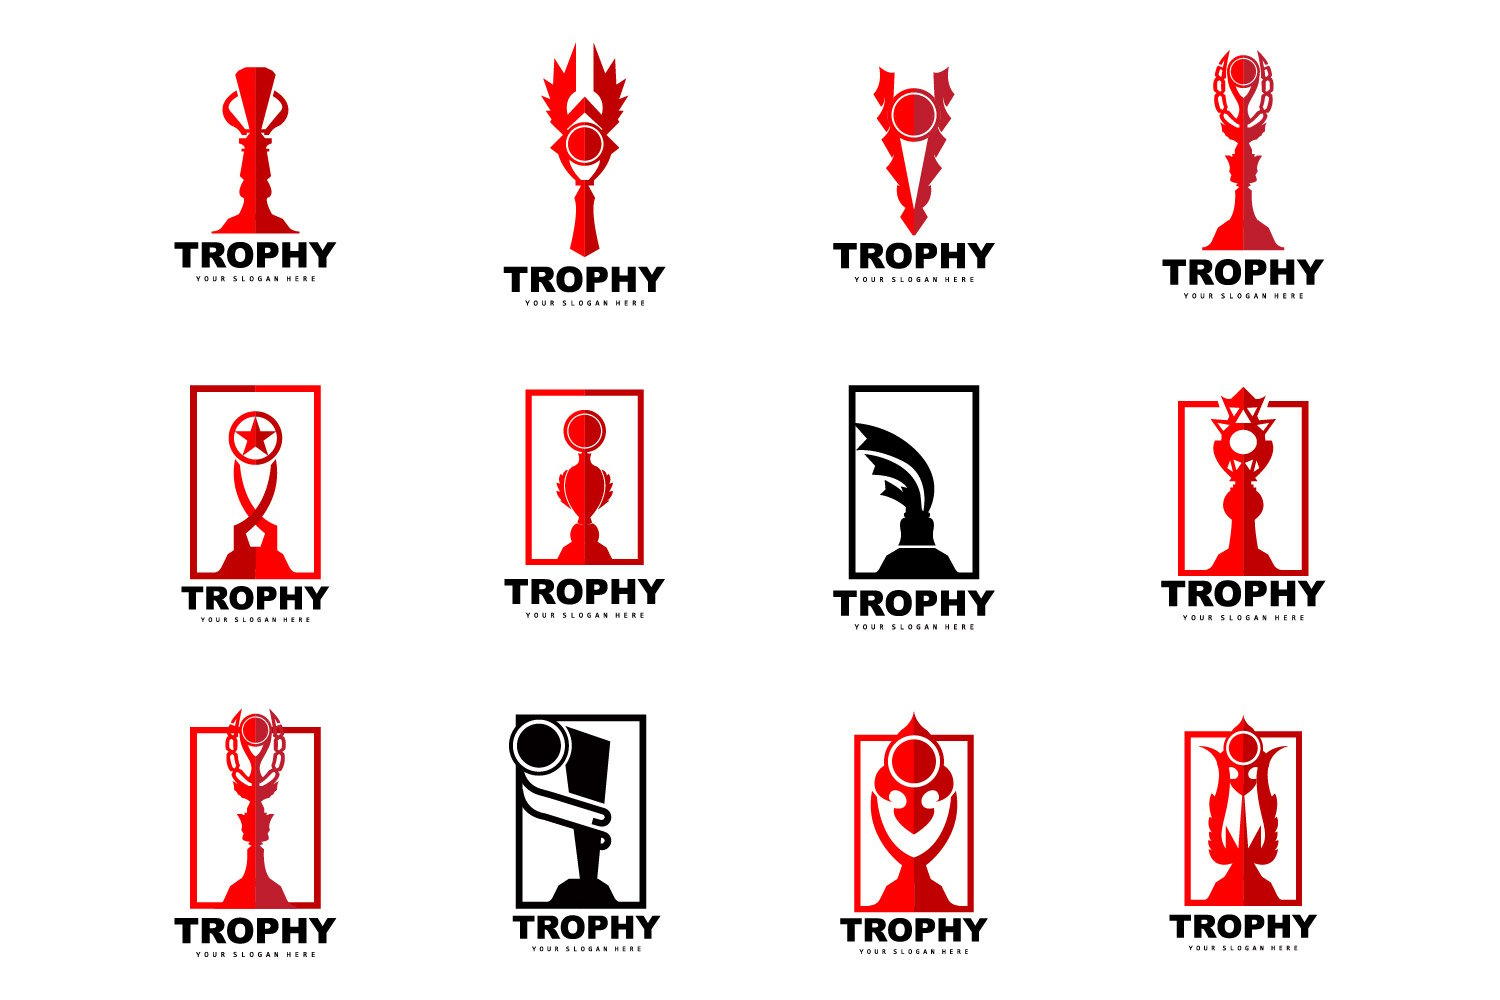 Kit Graphique #404674 Trophy Win Divers Modles Web - Logo template Preview